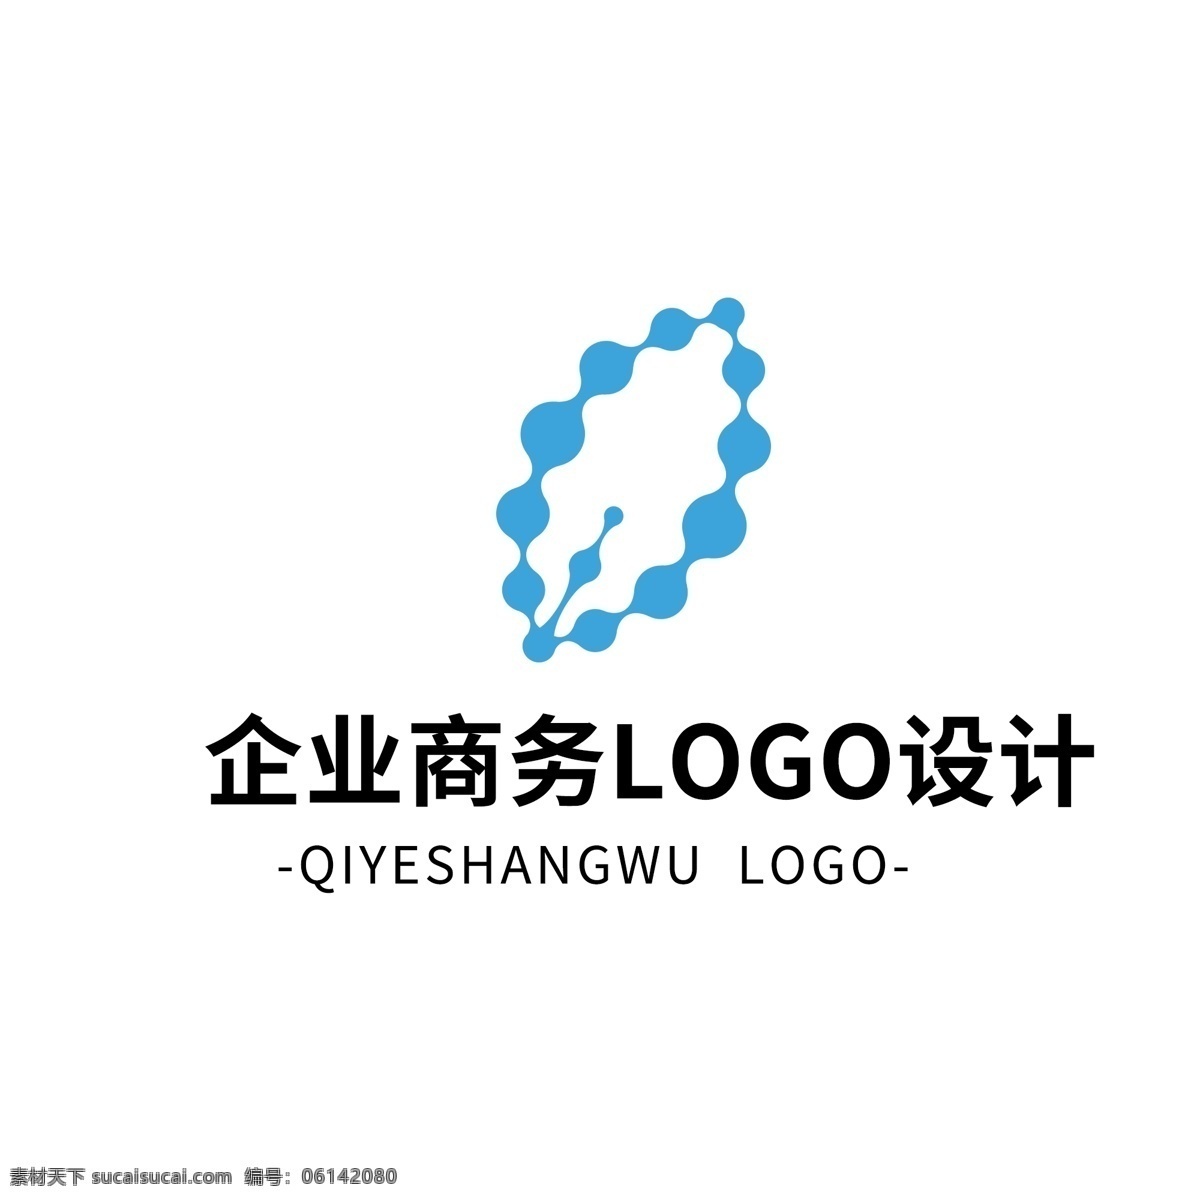 简约 大气 创意 企业 商务 logo 标志设计 矢量